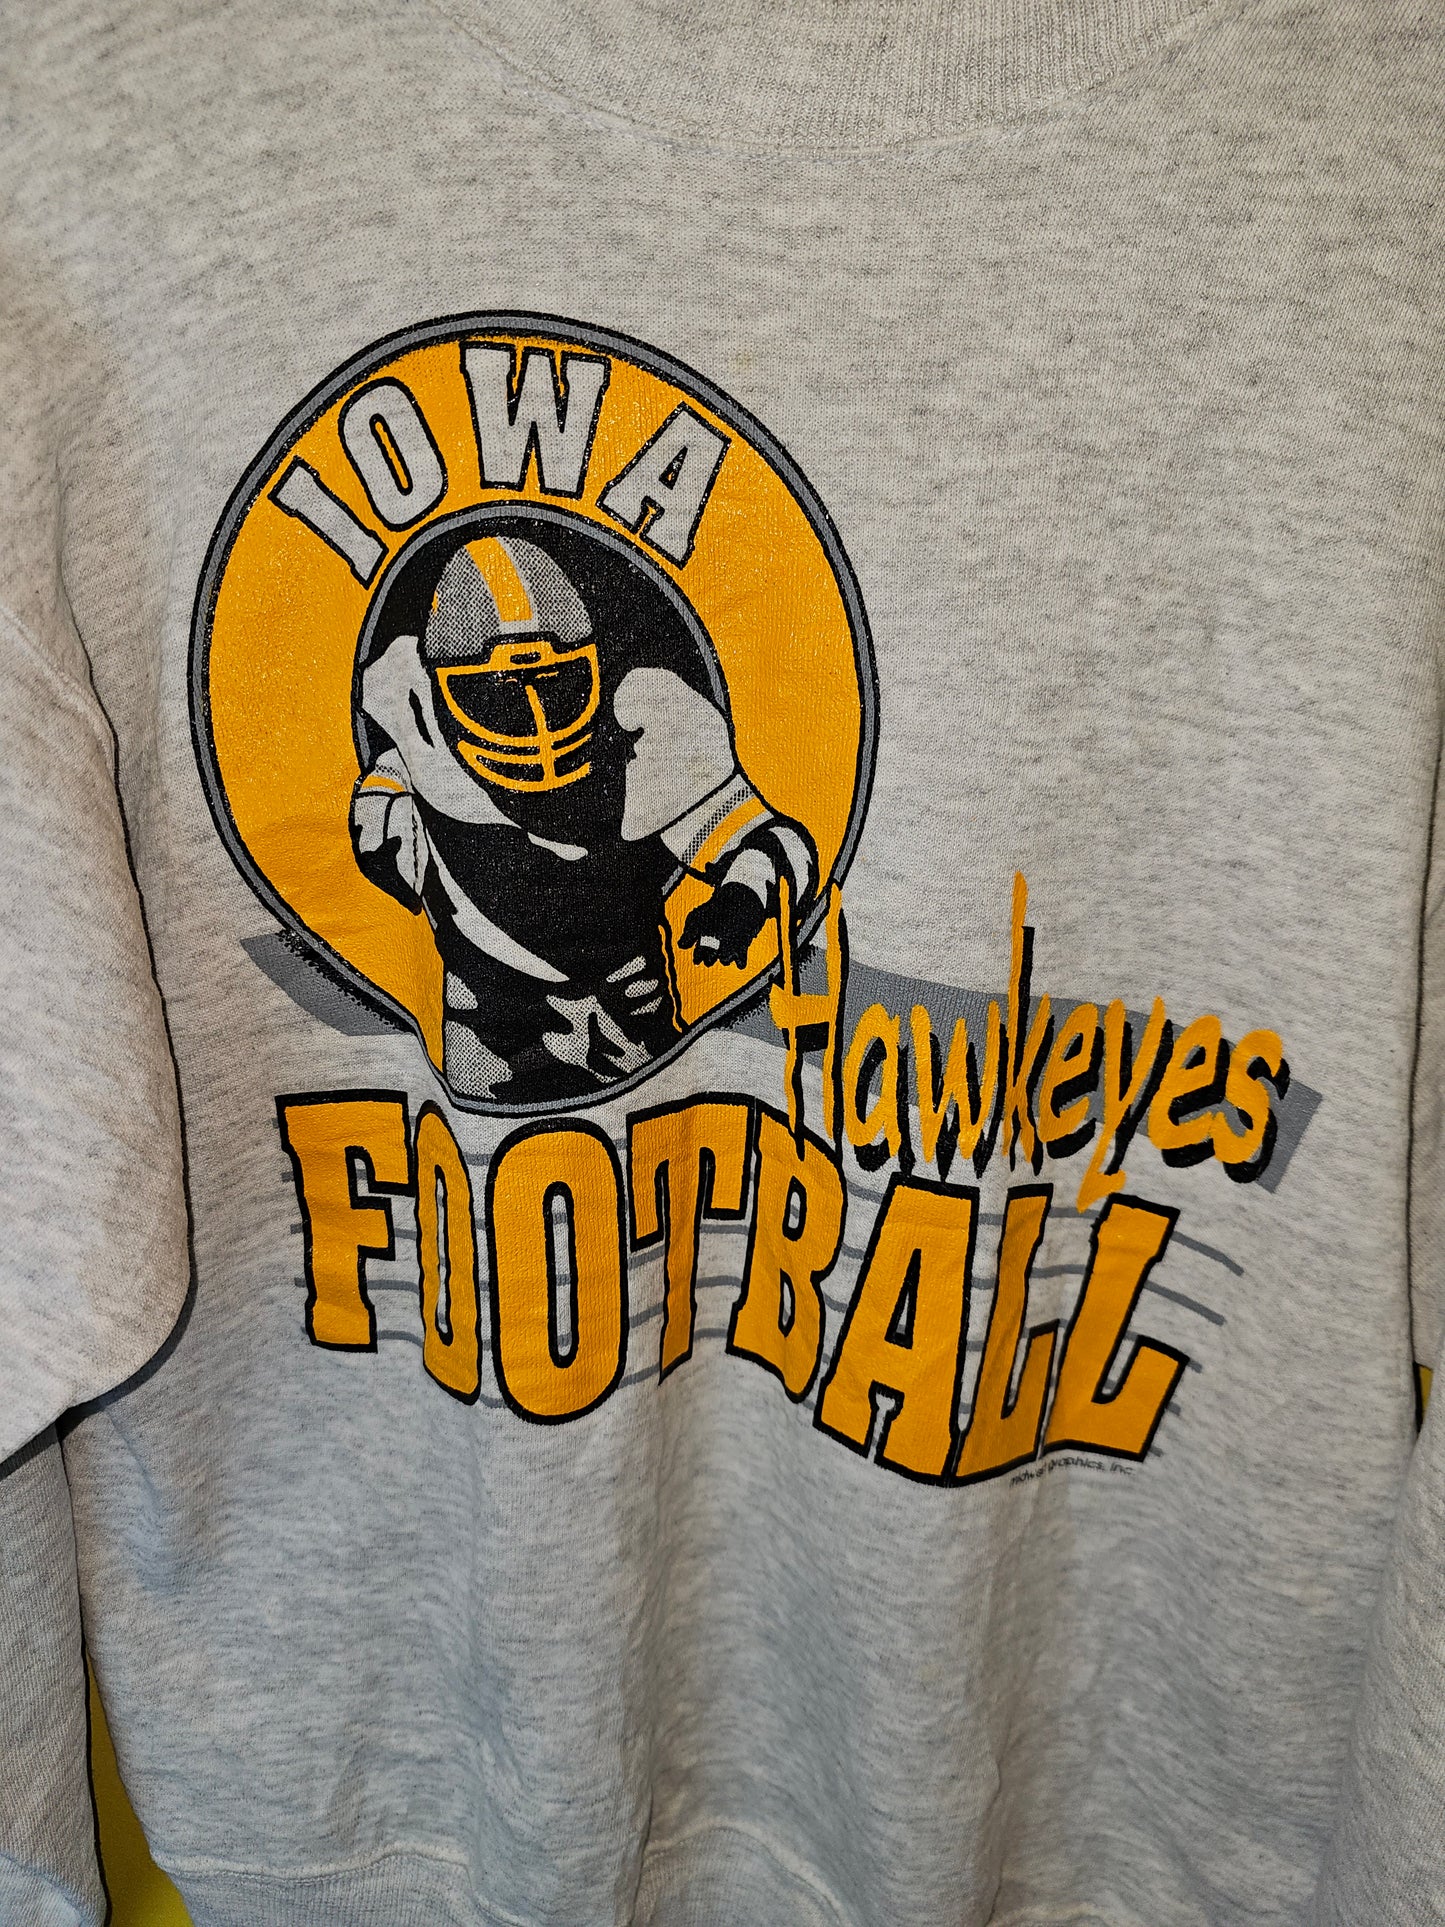 90's Iowa Hawkeyes Sweater (L)